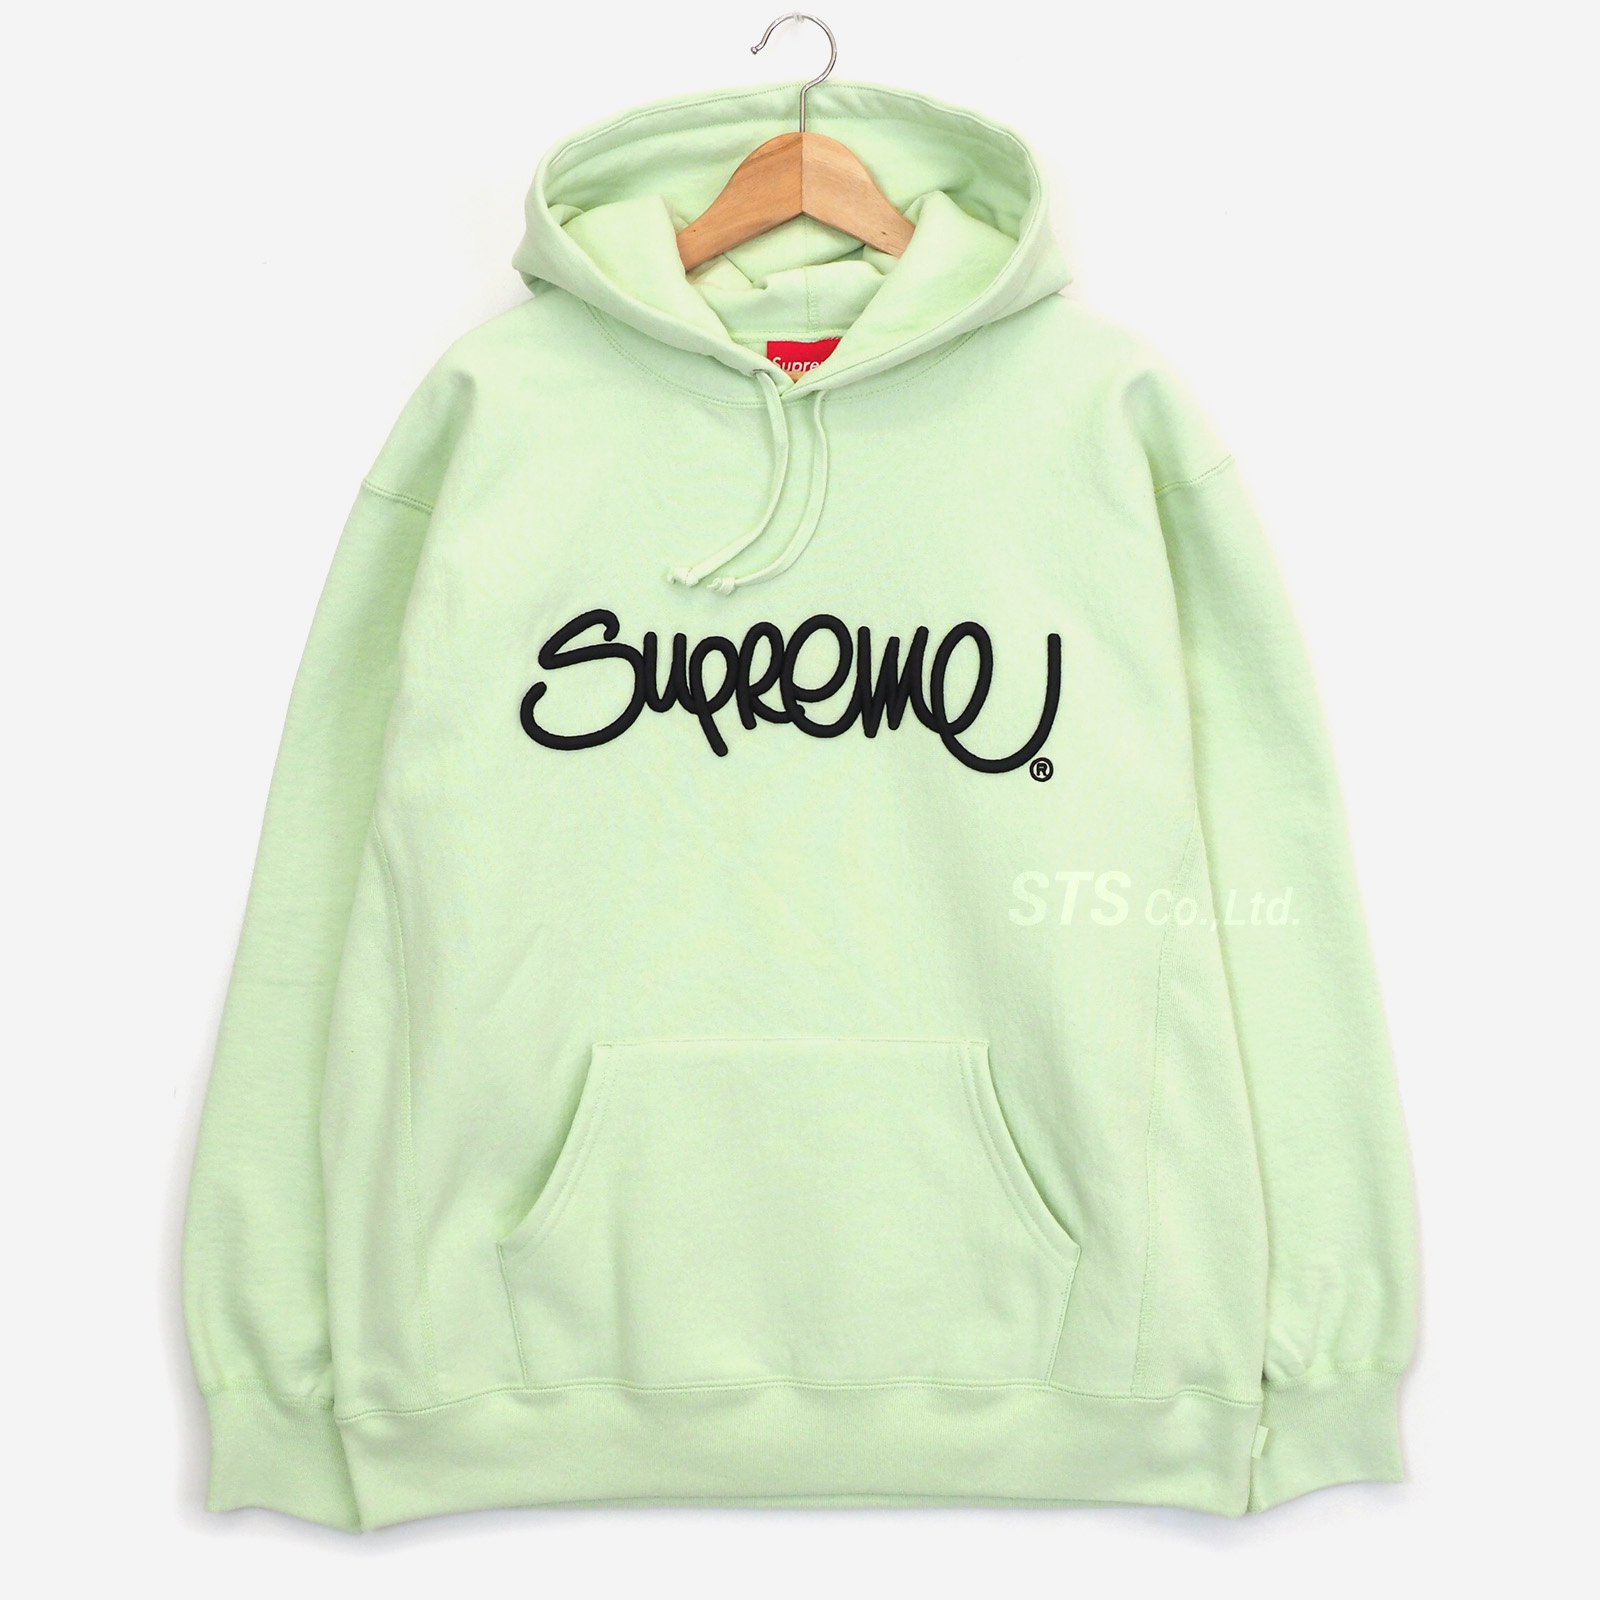 Supreme - Raised Handstyle Hooded Sweatshirt - UG.SHAFT